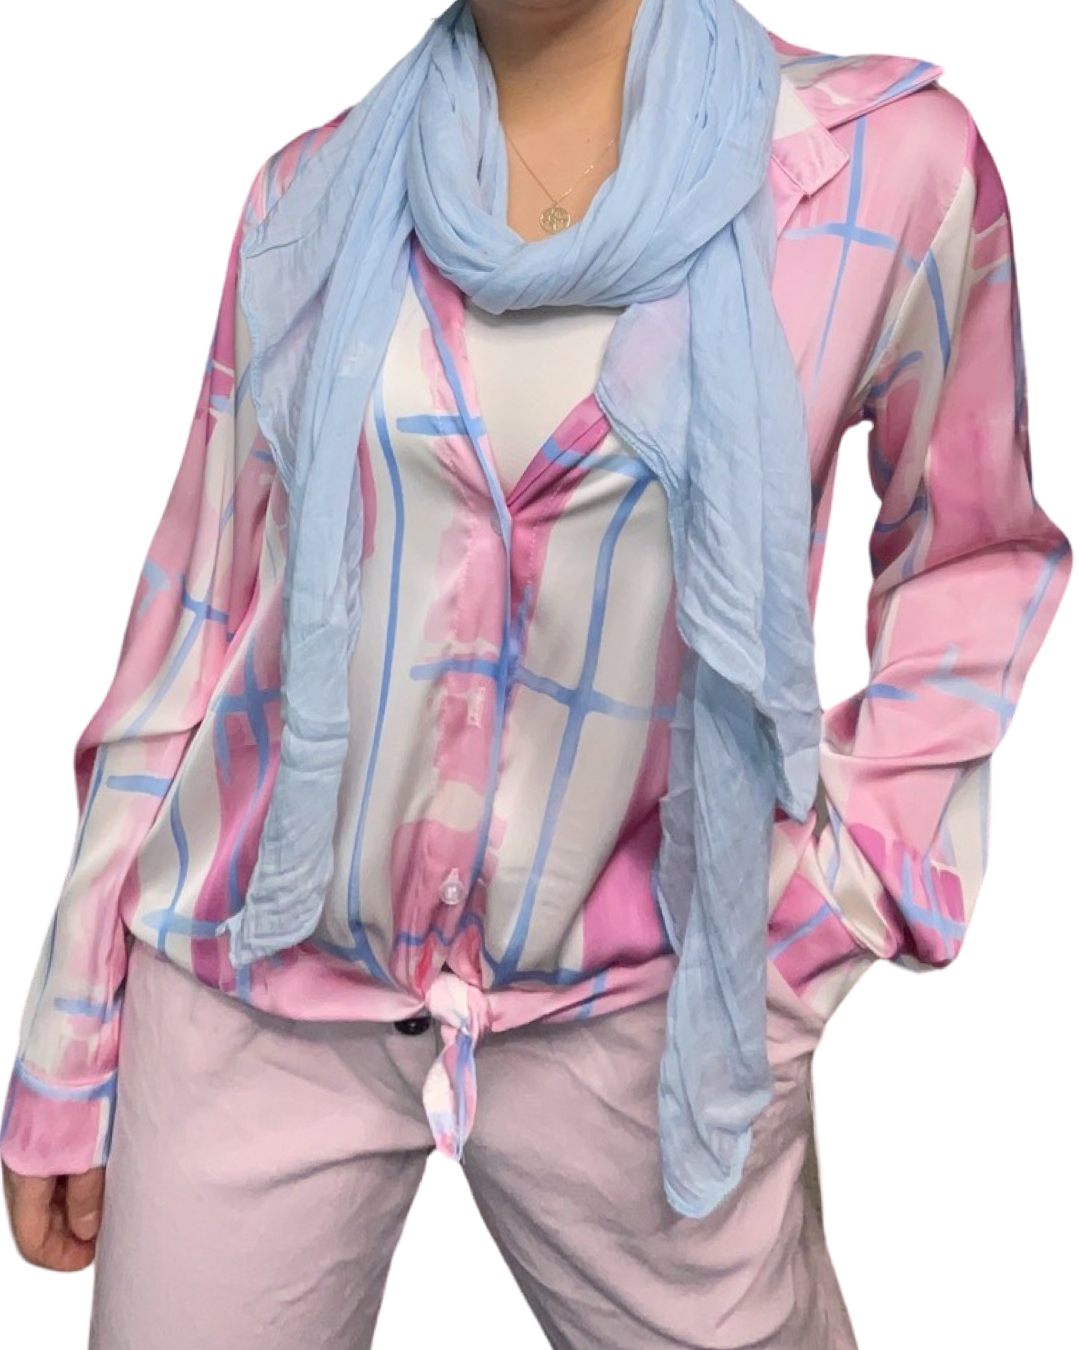 Chemise rose pour femme imprimé de carreaux abstraits avec foulard, camisole blanche et pantalons lilas.